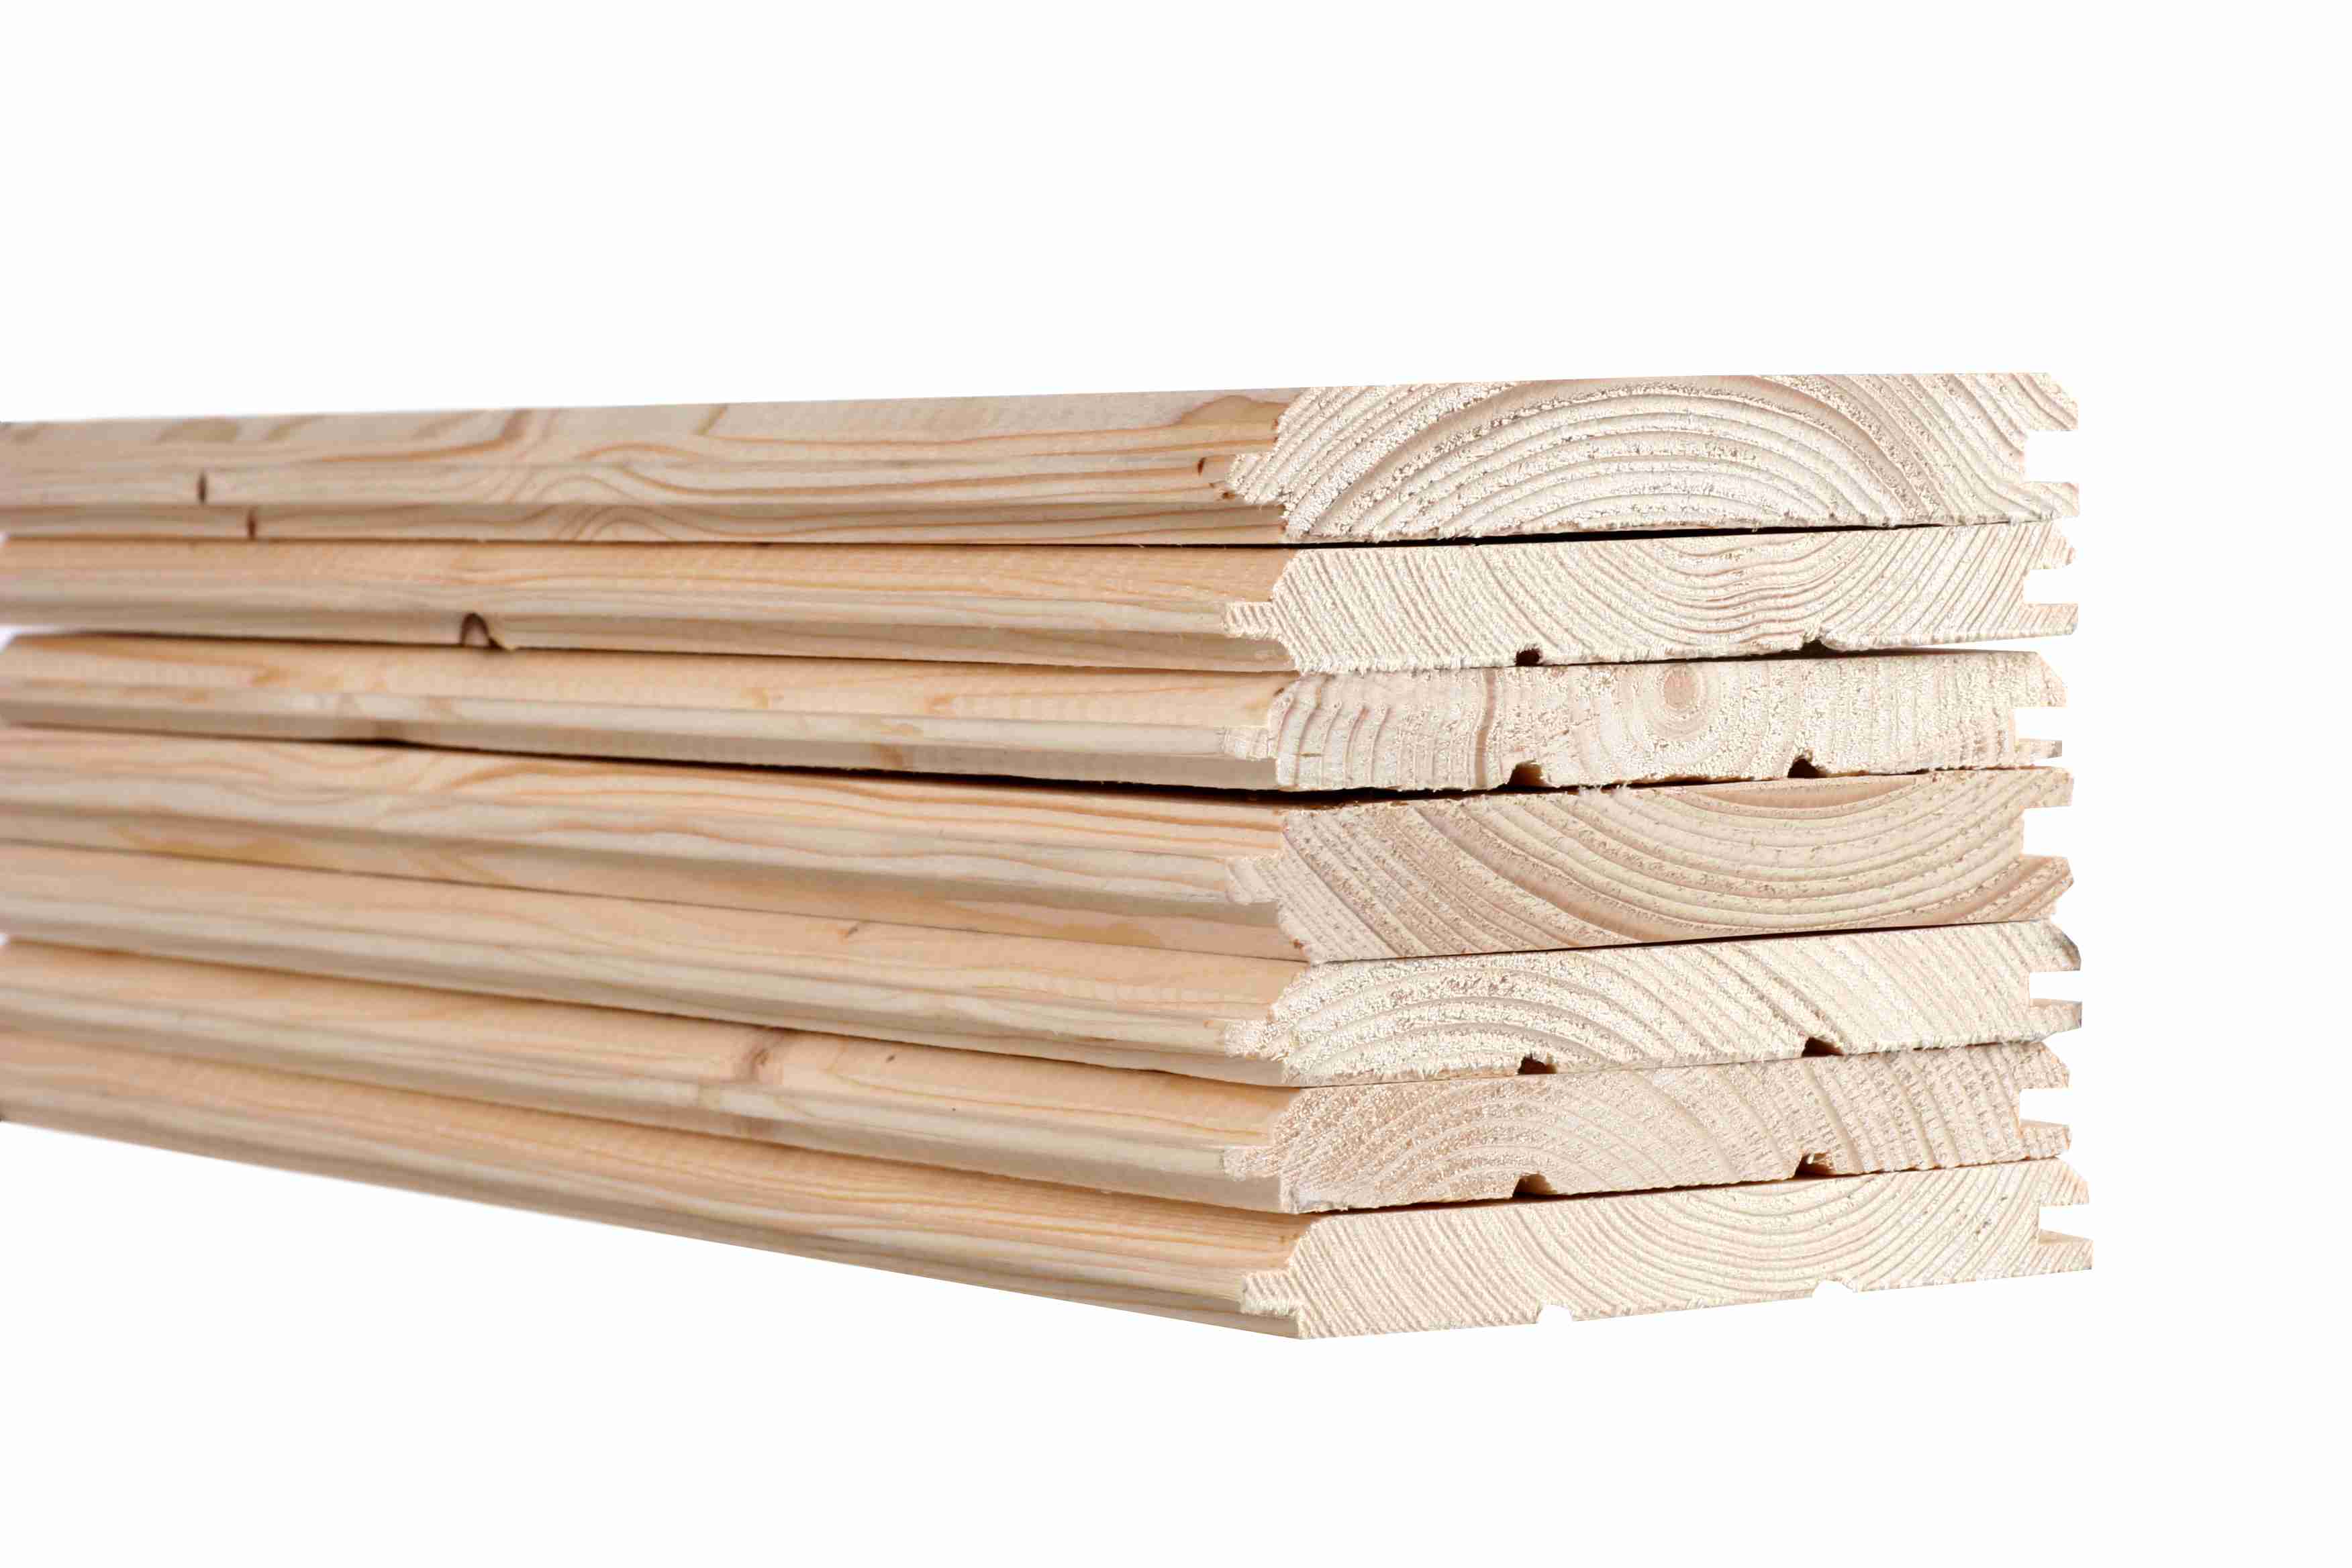 Palubka patří k základním výrobkům, polotovarům z čistého dřeva.